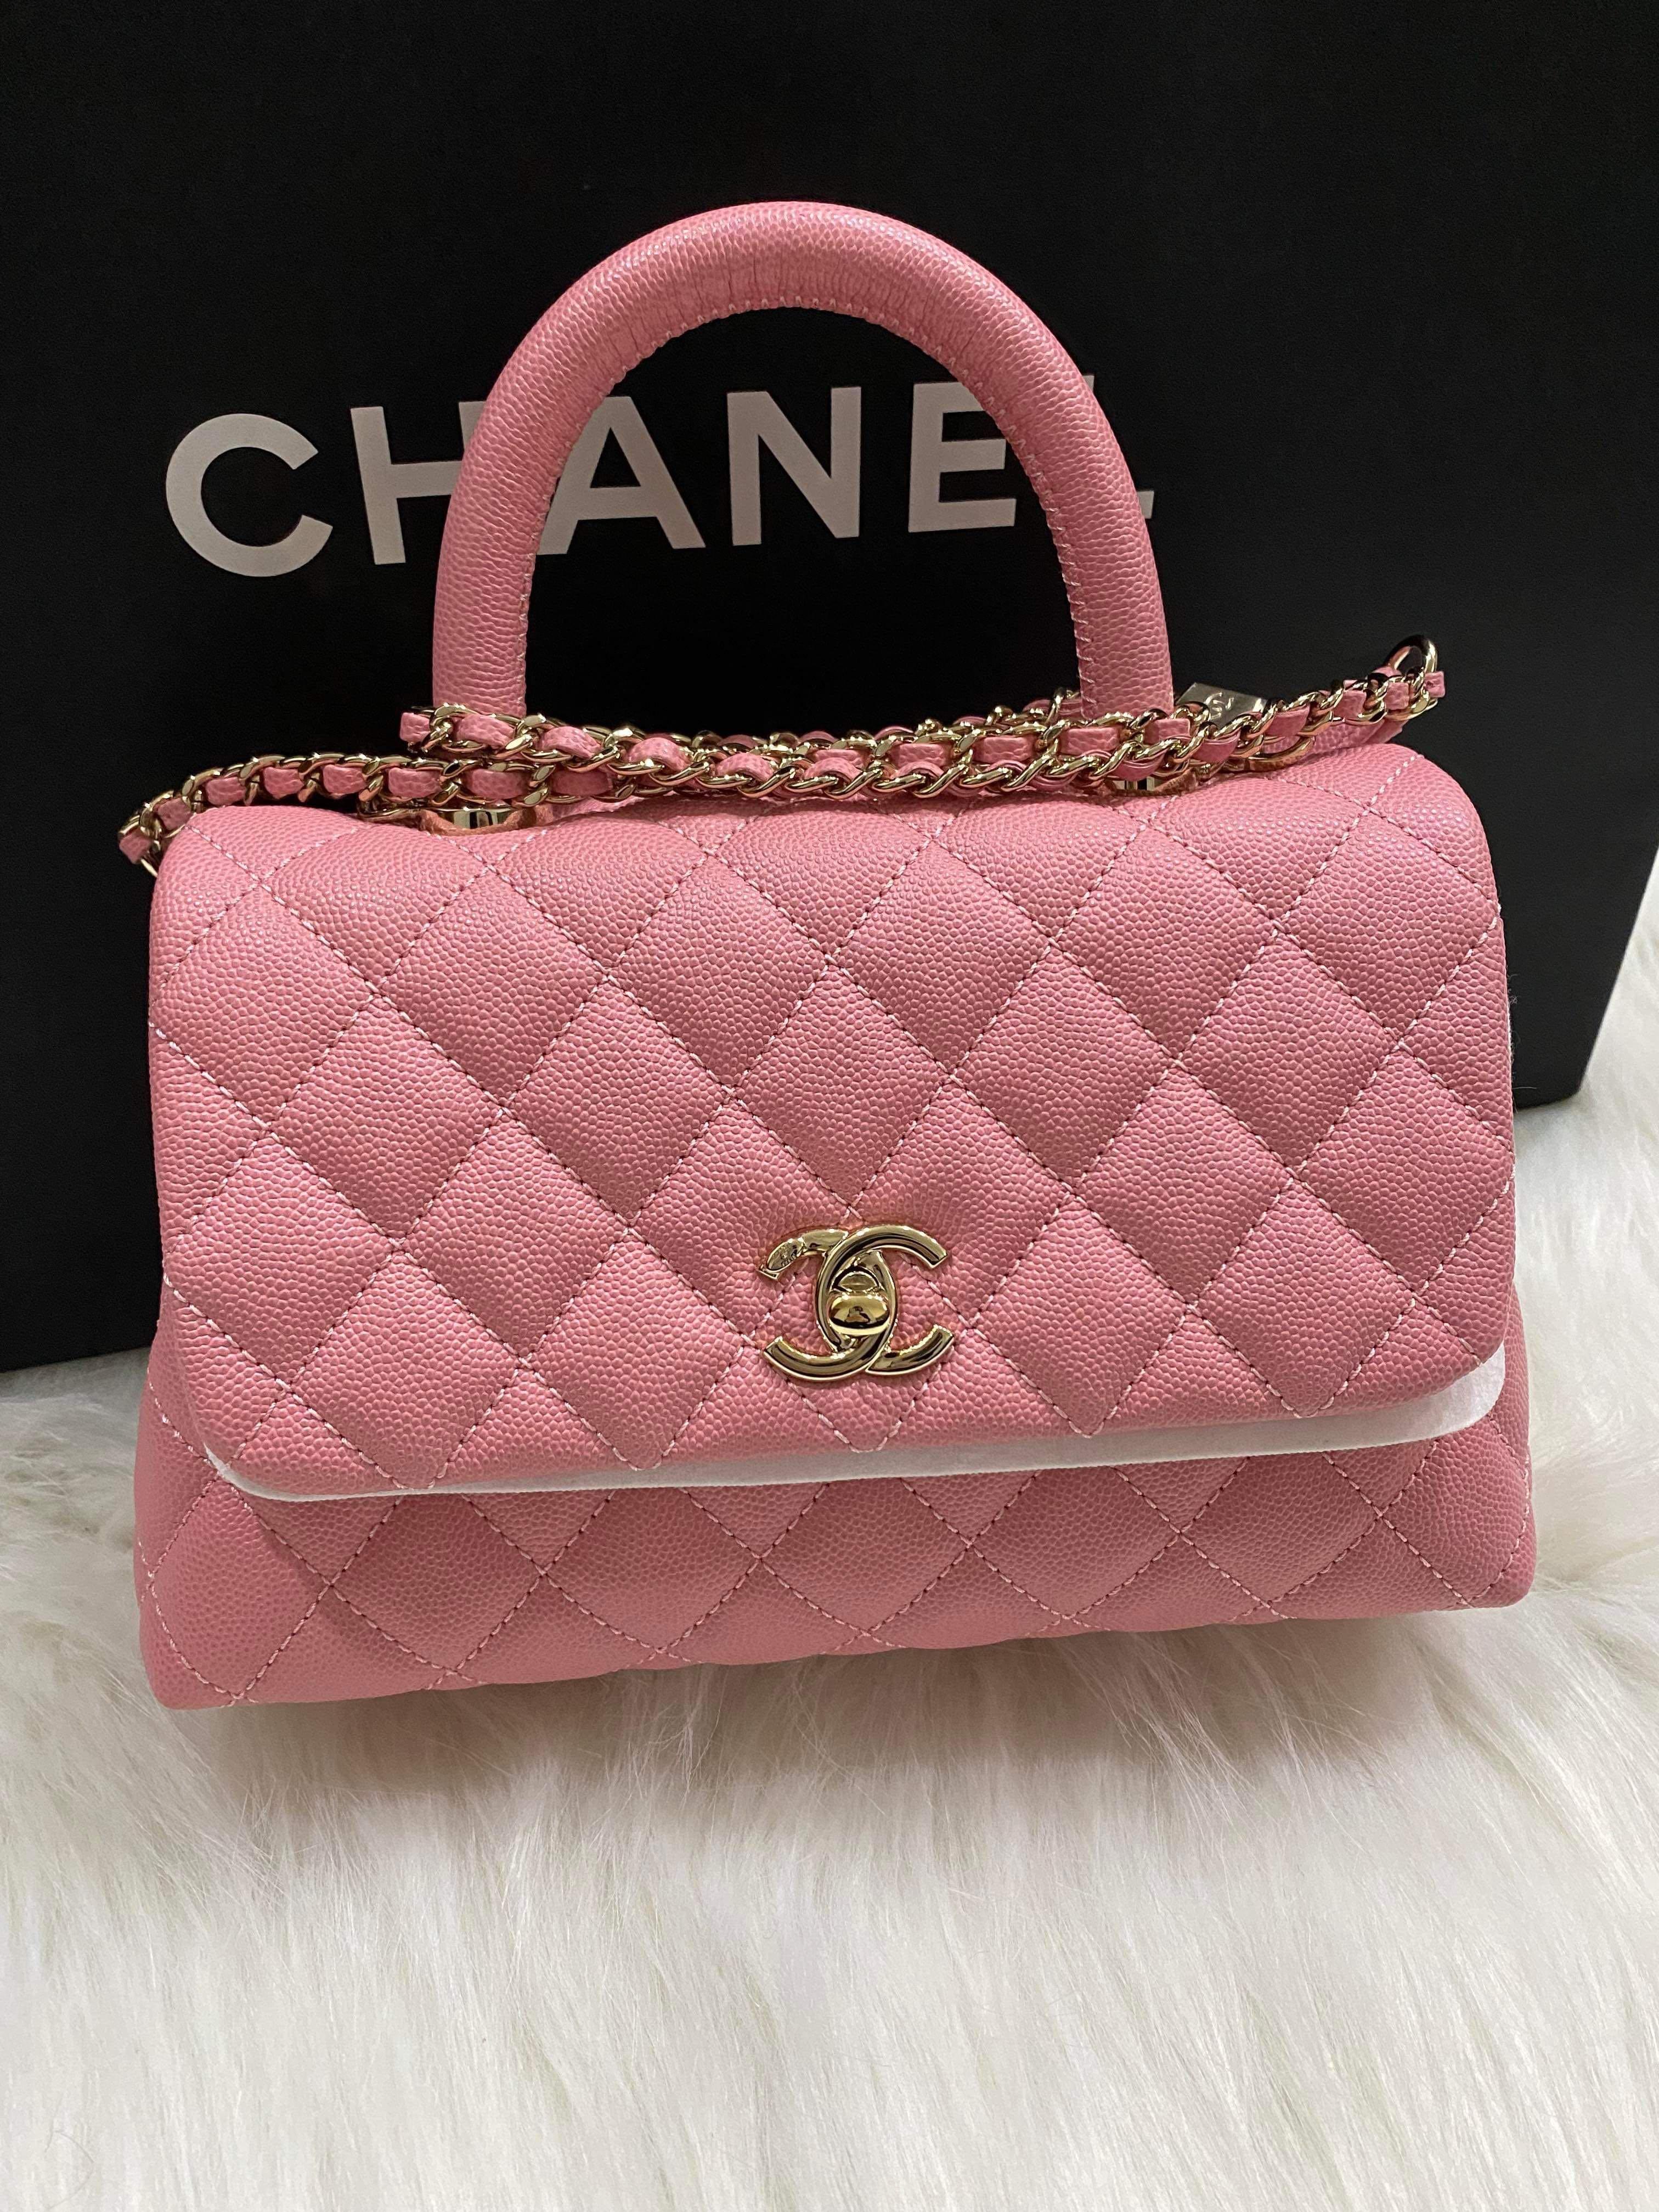 Chanel Pink Lambskin Small Top Handle Vanity Bag  Jadore Couture